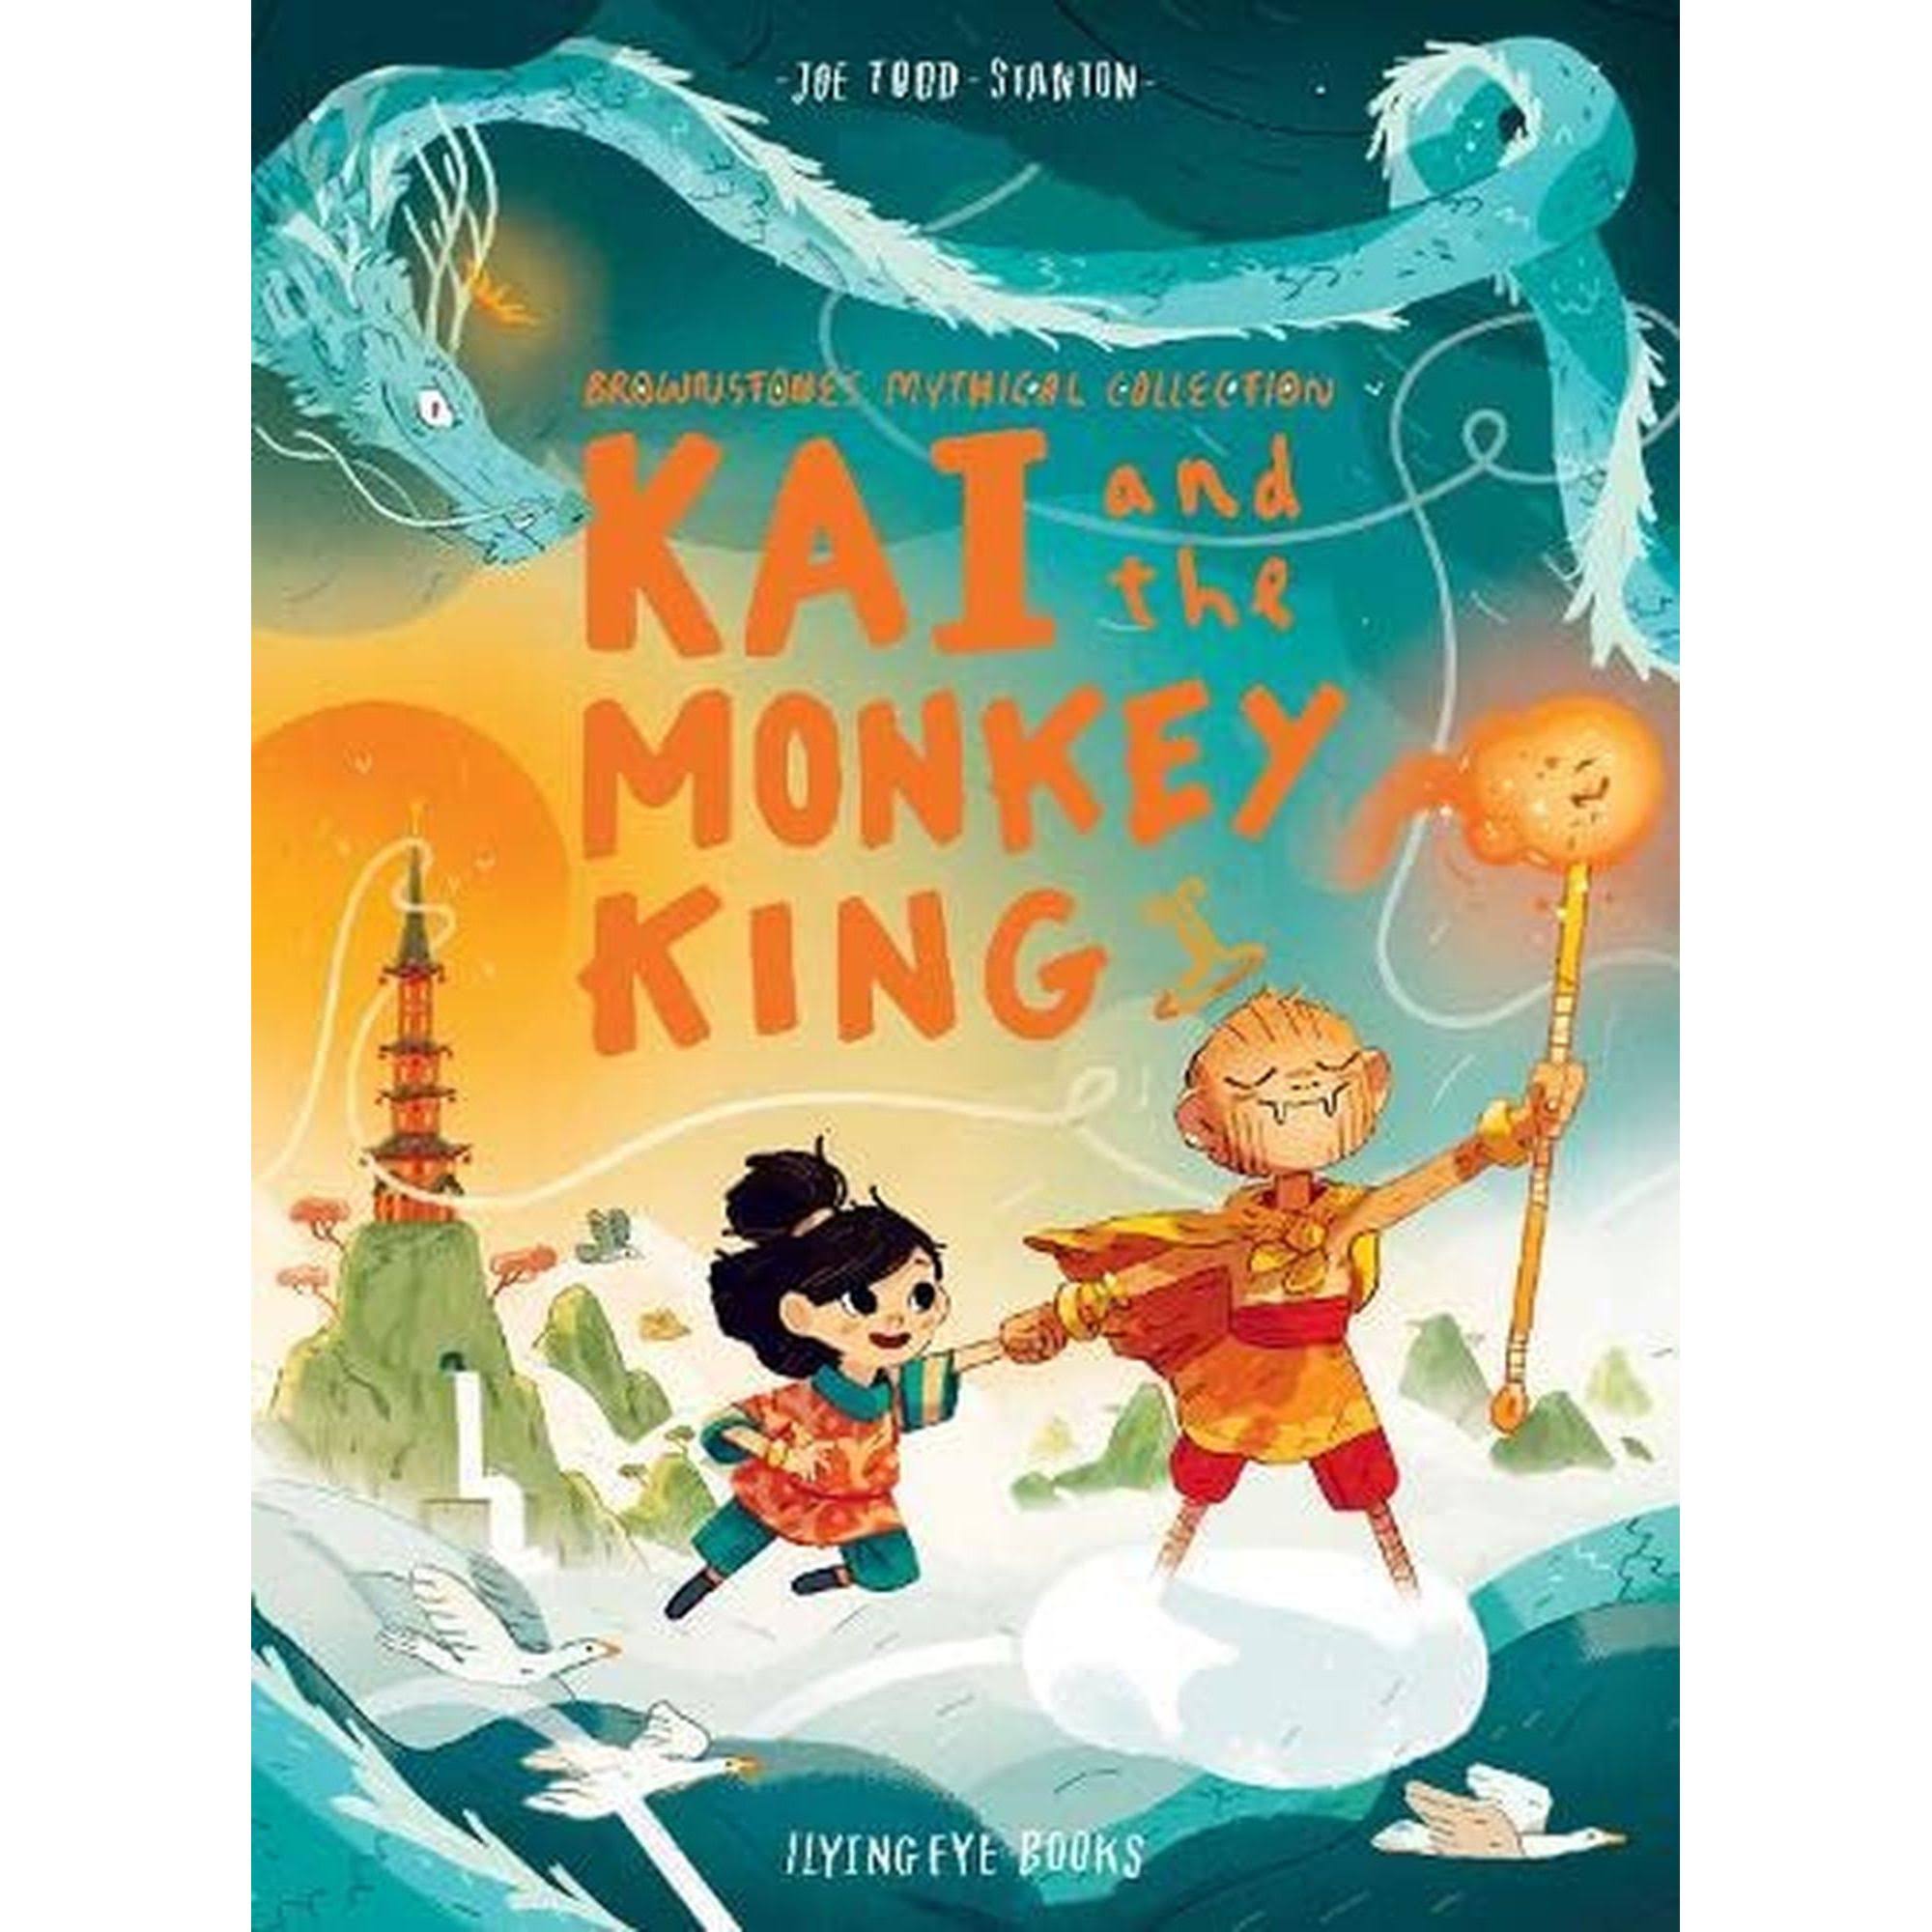 Kai and the Monkey King by Joe Todd Stanton